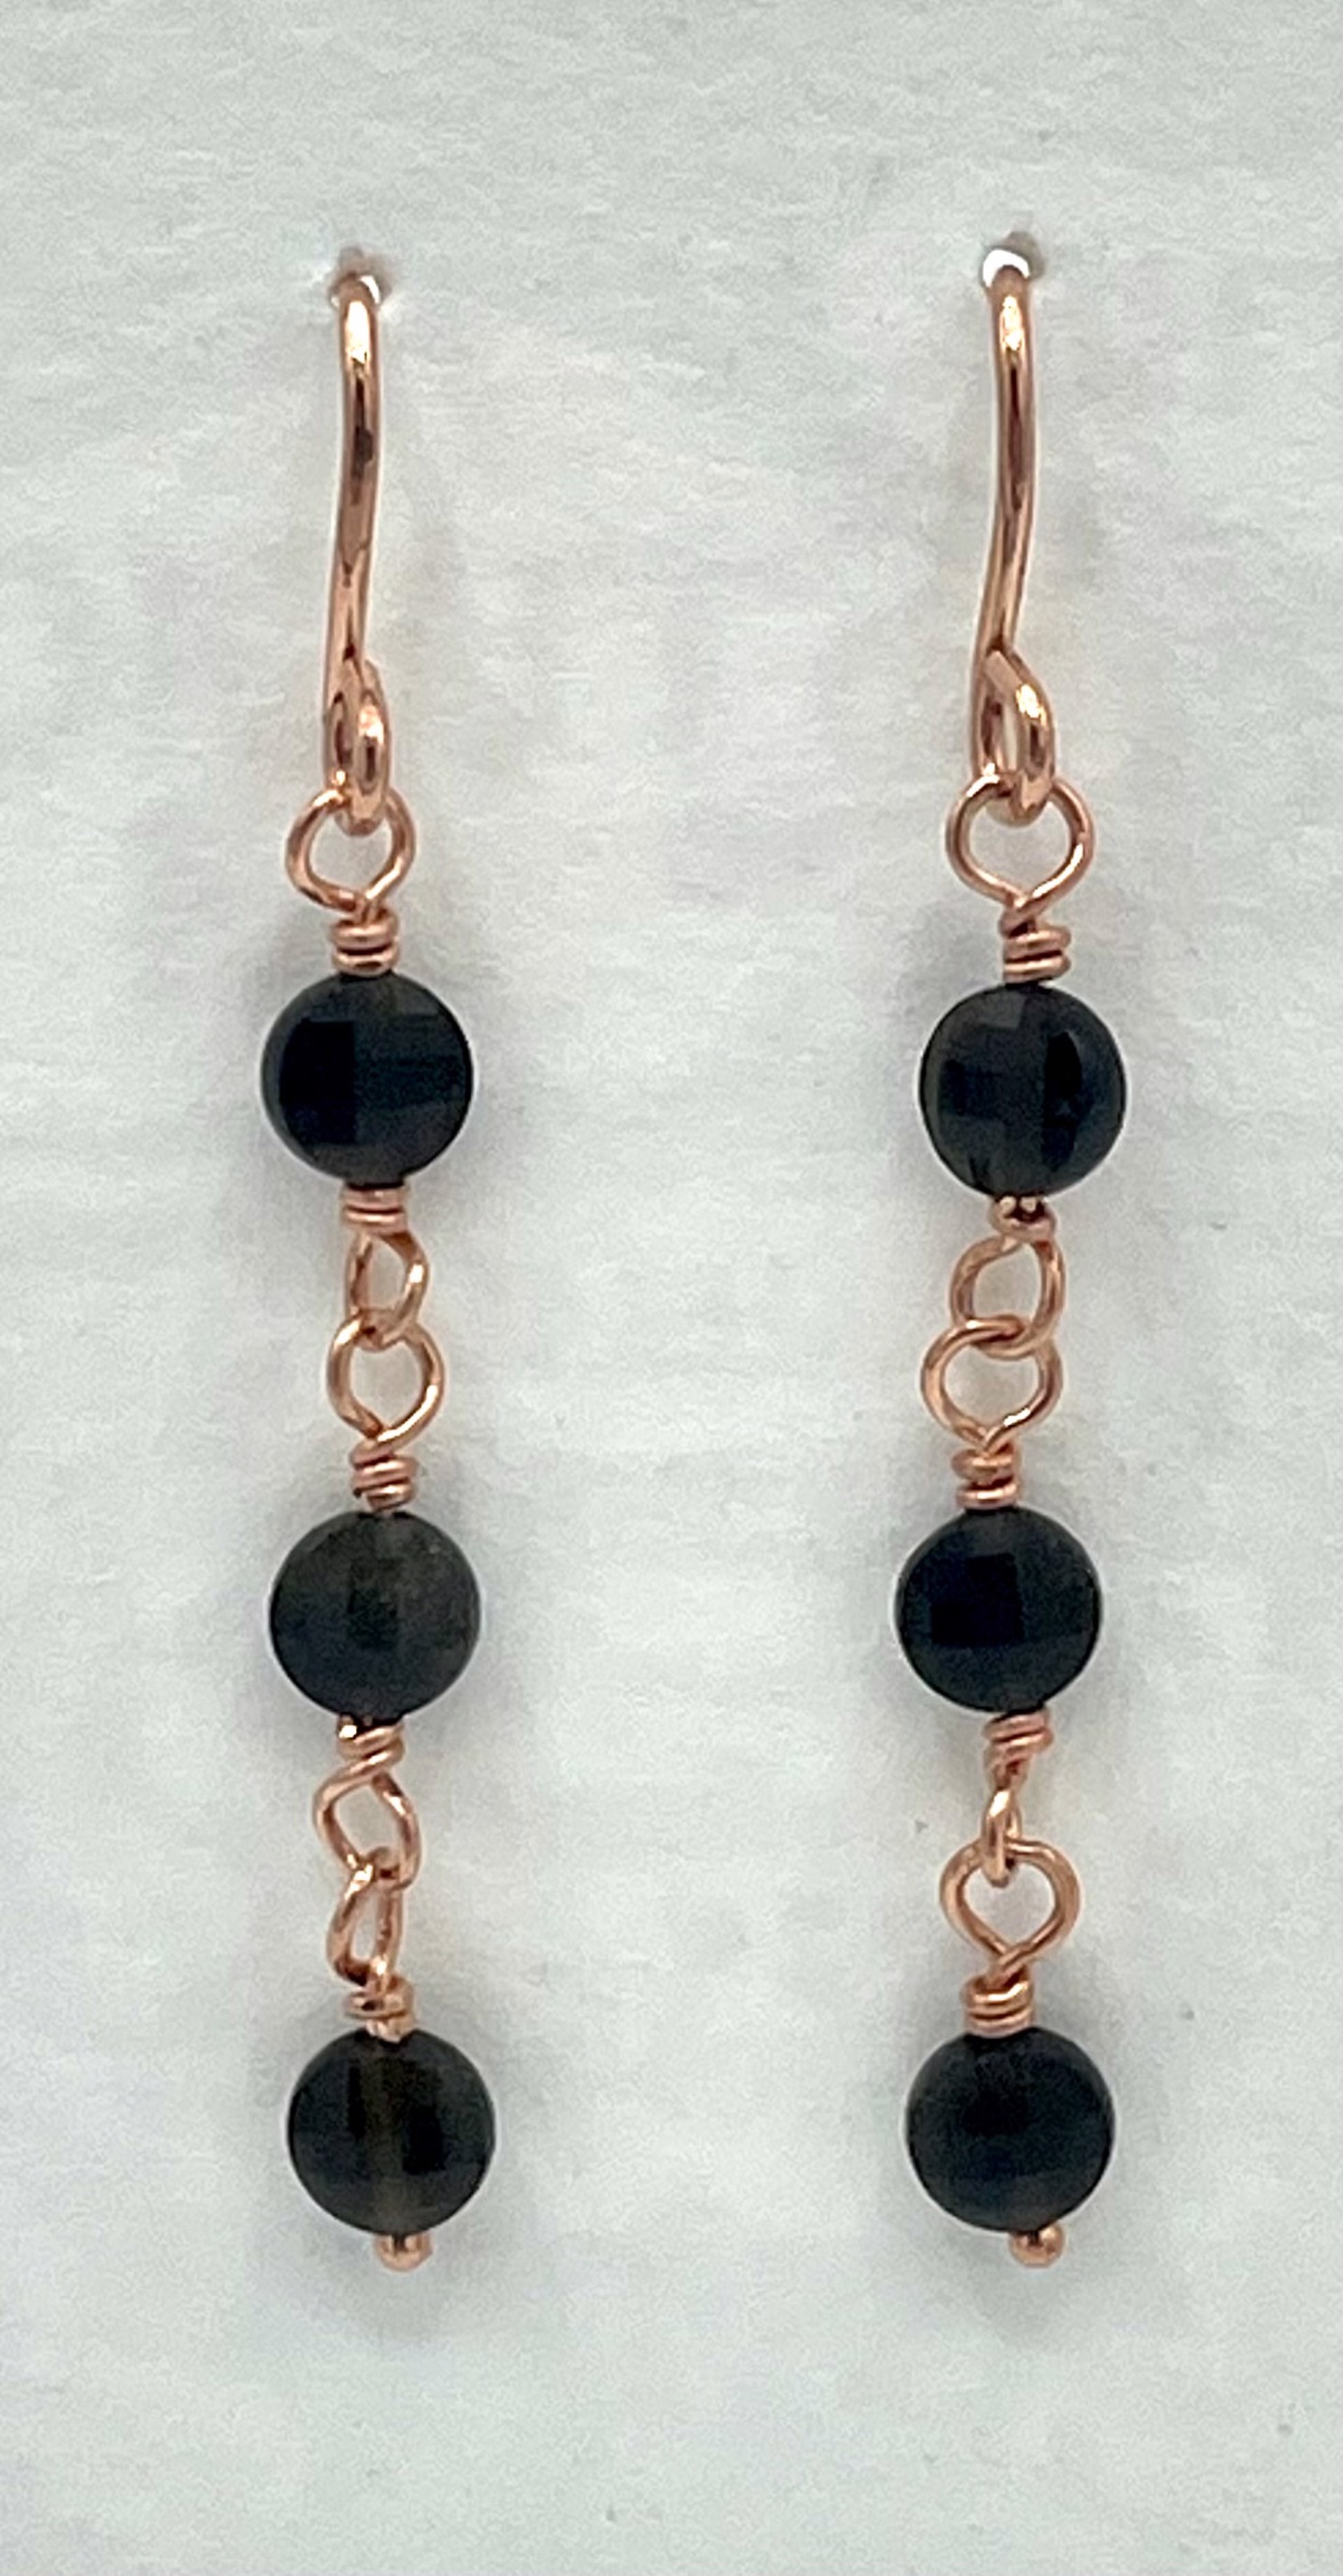 Obsidian Earrings by Emelie Hebert